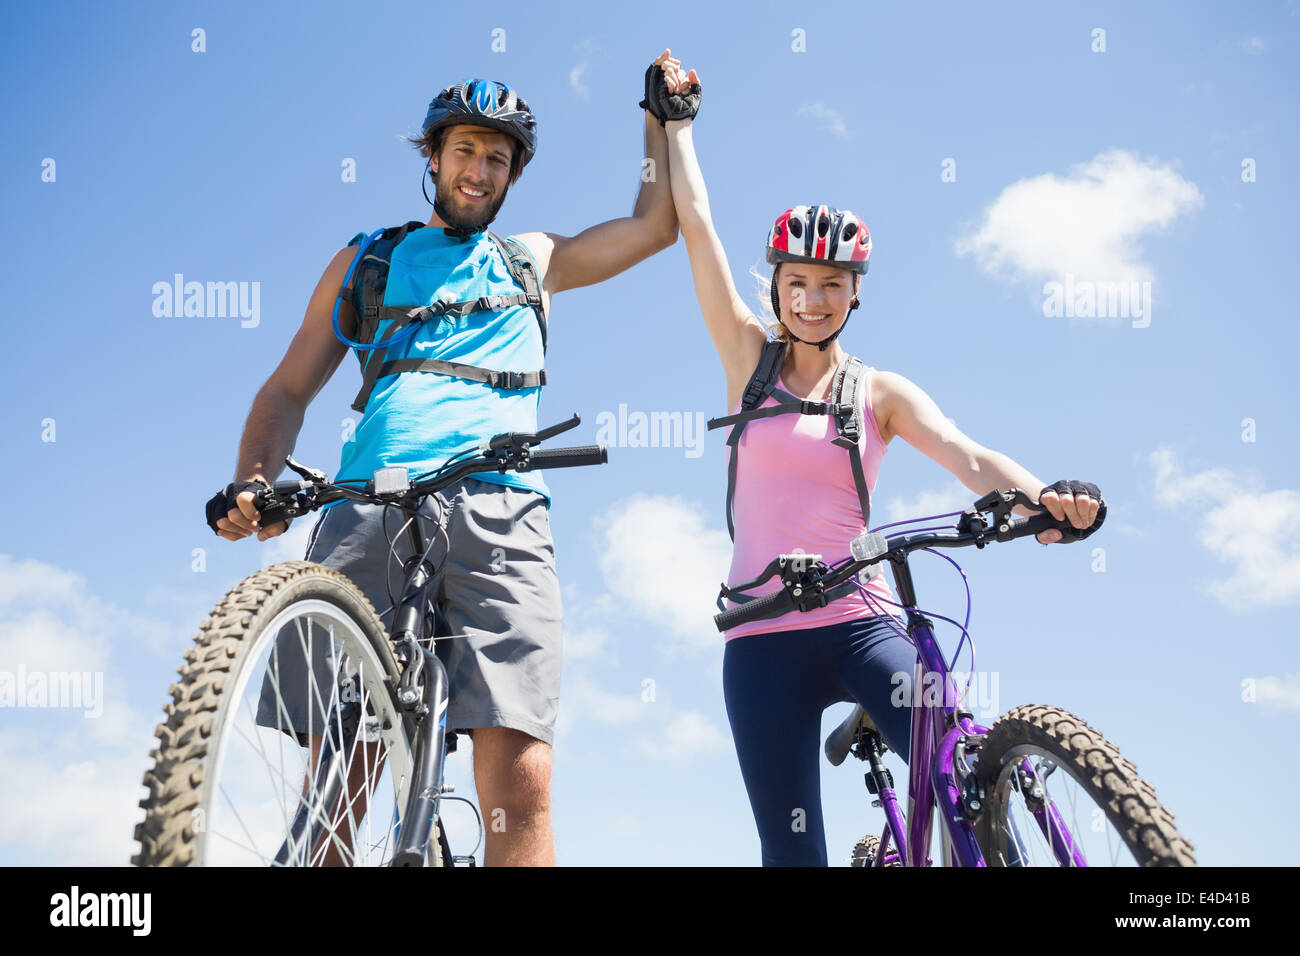 Passen Sie Radfahrer paar gerne den Gipfel erreicht haben Stockfoto